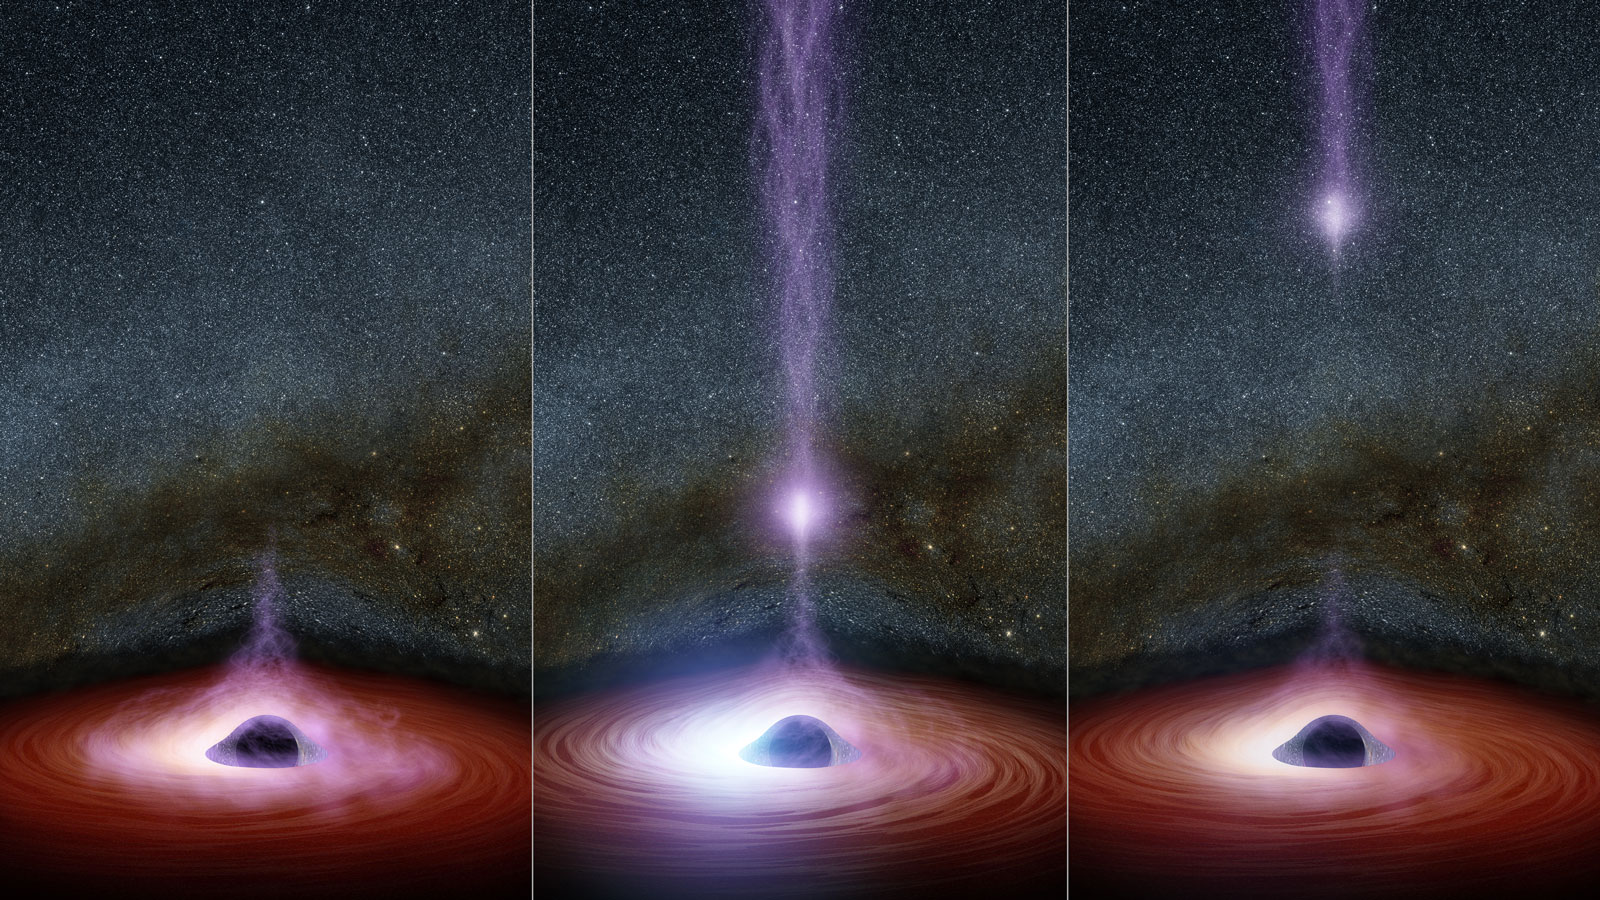 La Vía Láctea tiene 100 millones de agujeros negros. ¿Quién los ha contado?